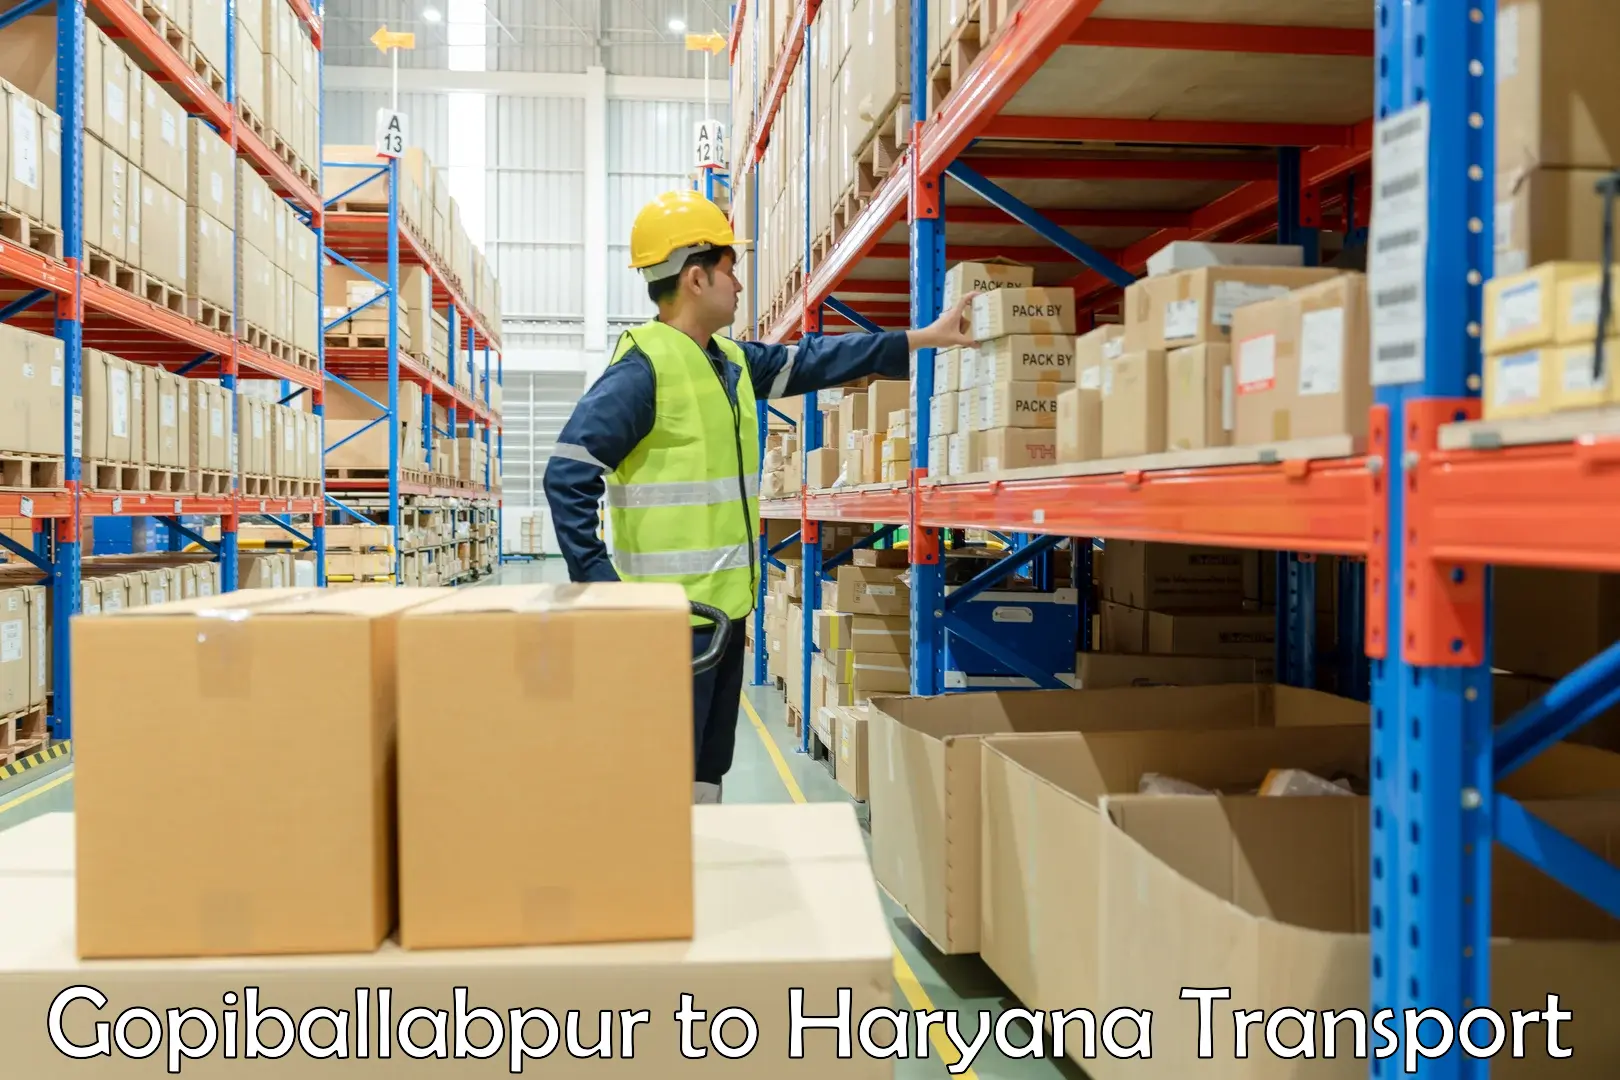 Shipping services Gopiballabpur to Bilaspur Haryana